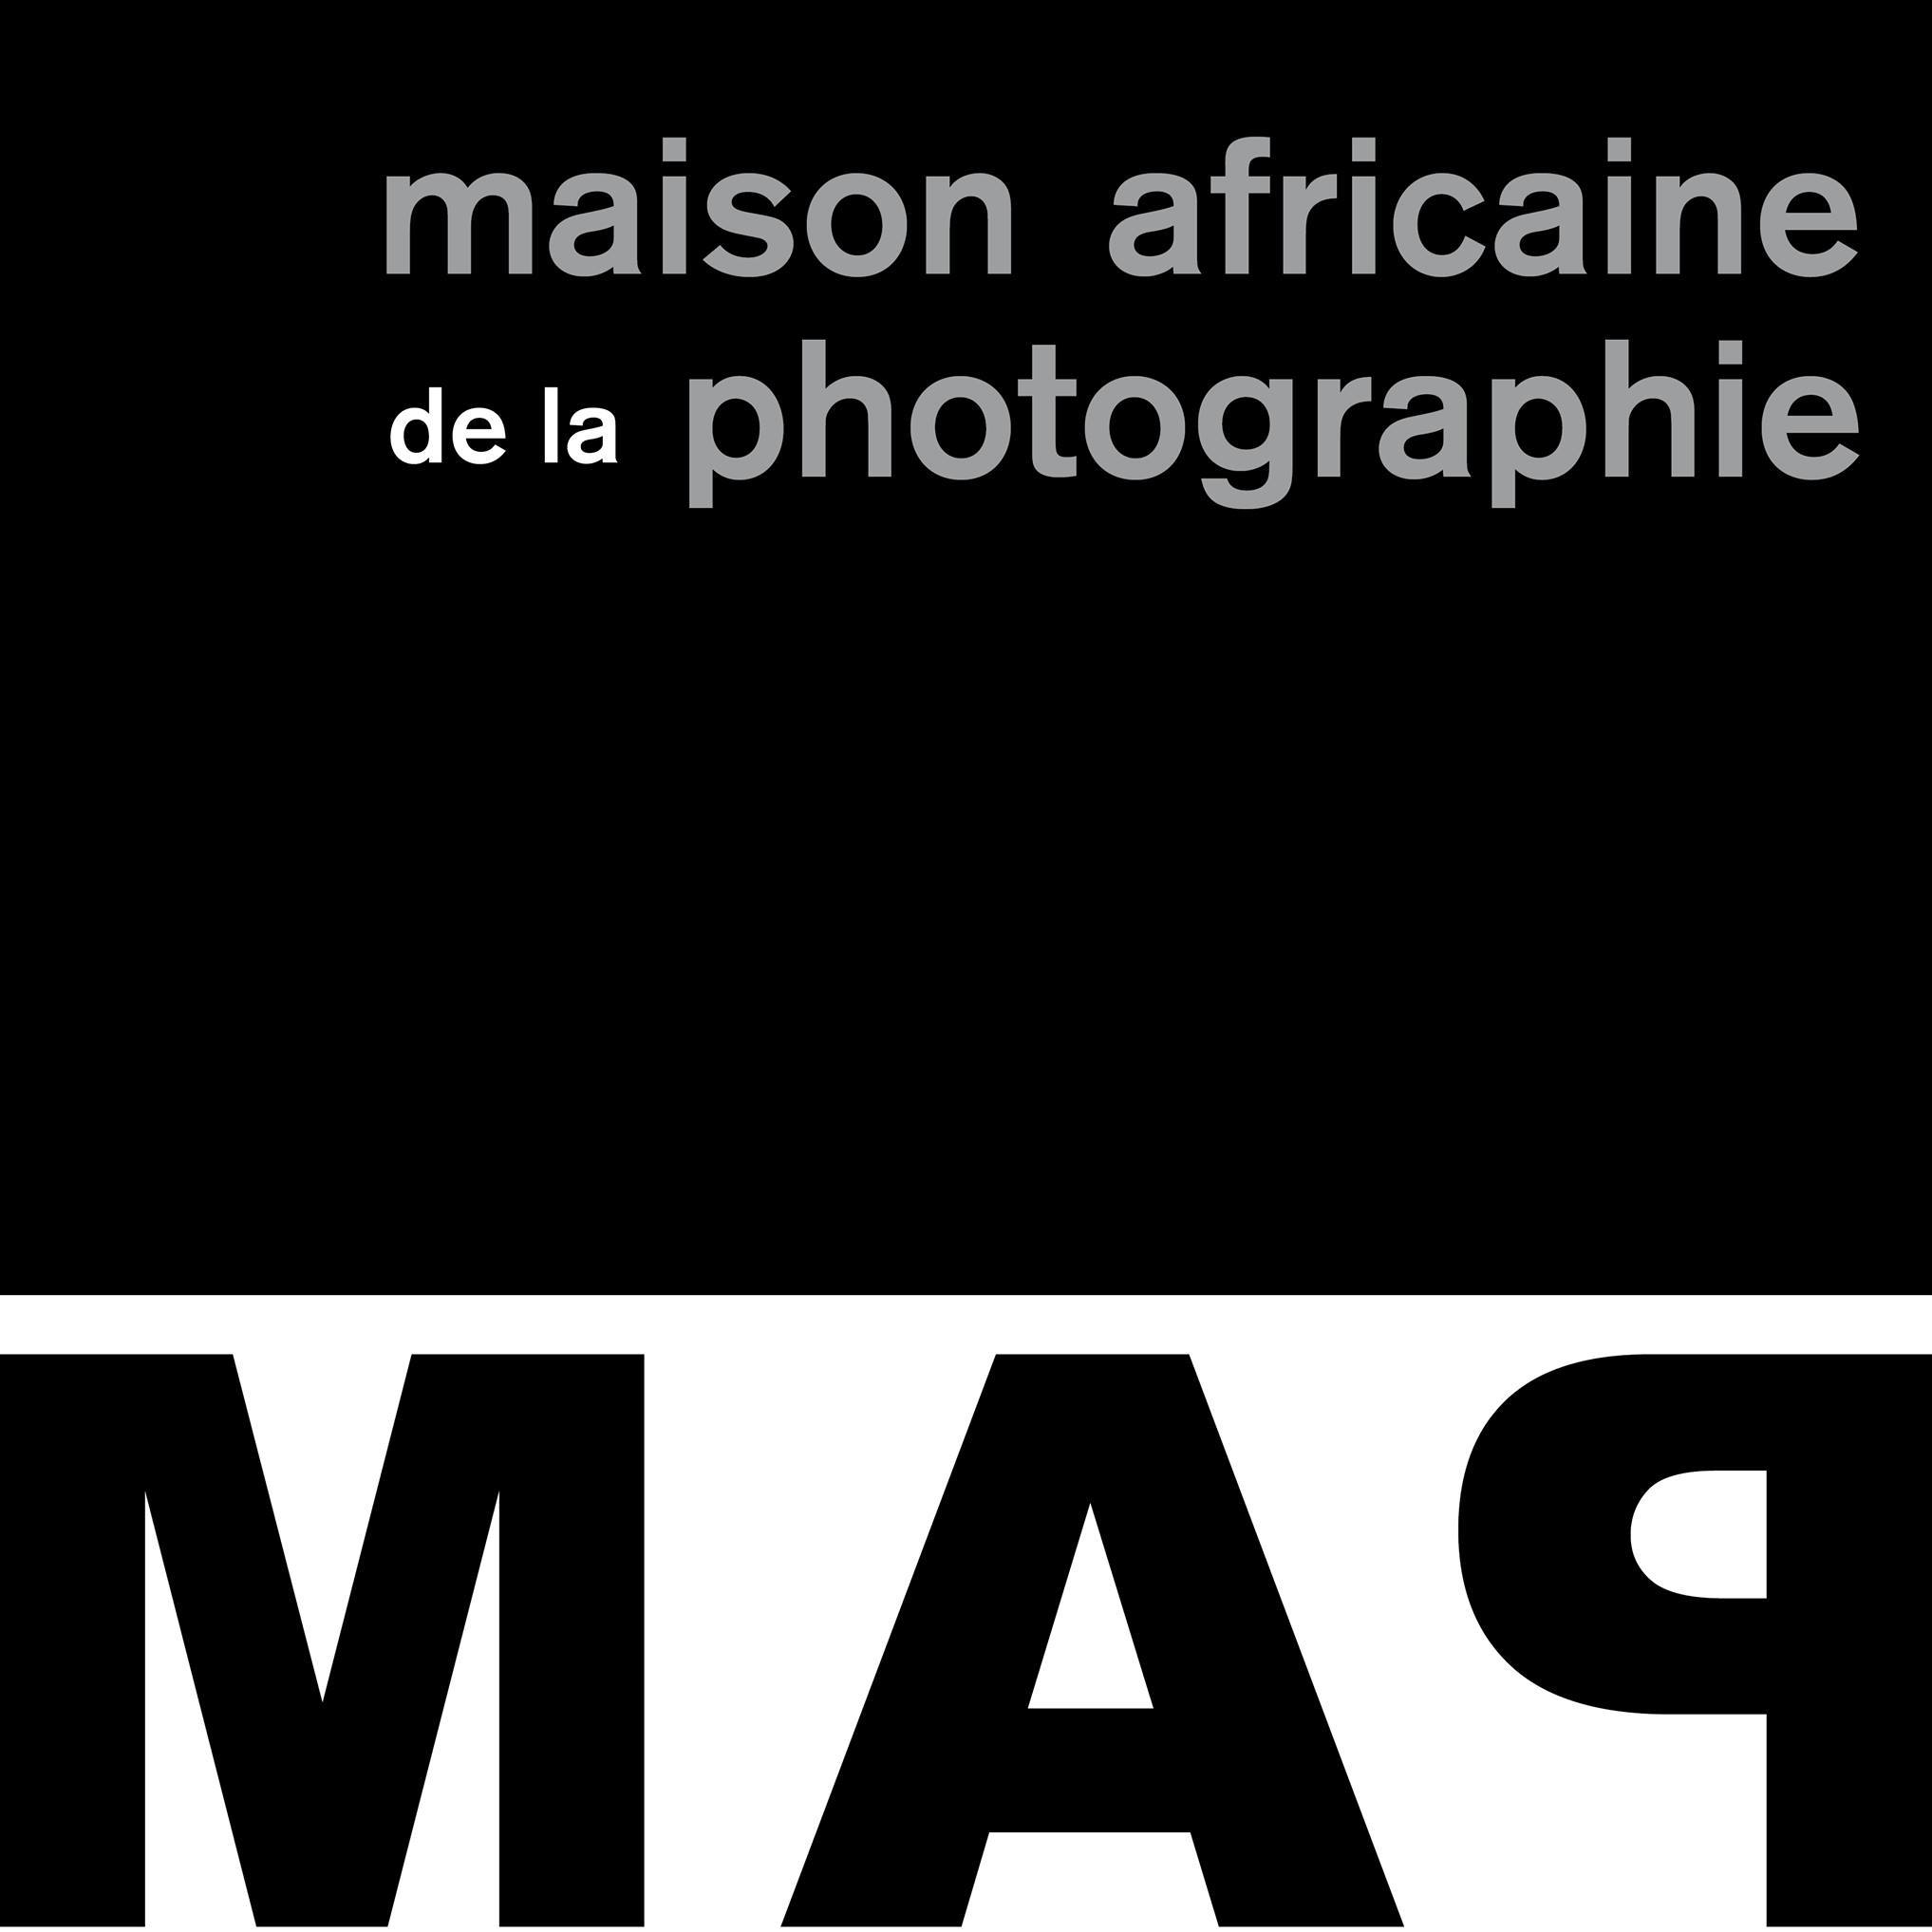 maison africaine de la photographie